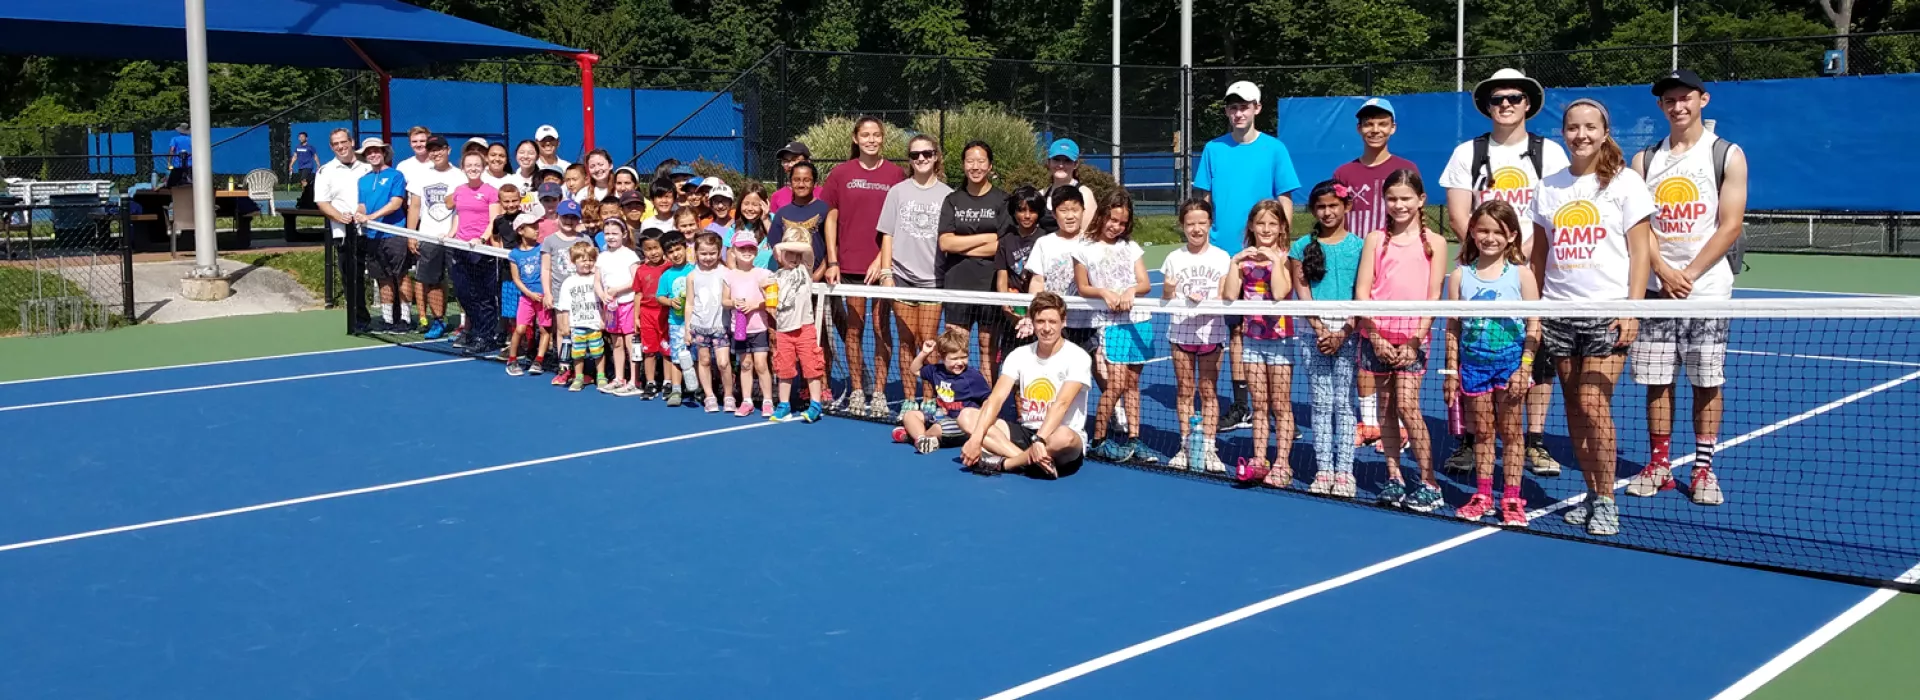 Tennis Program at Upper Main Line YMCA